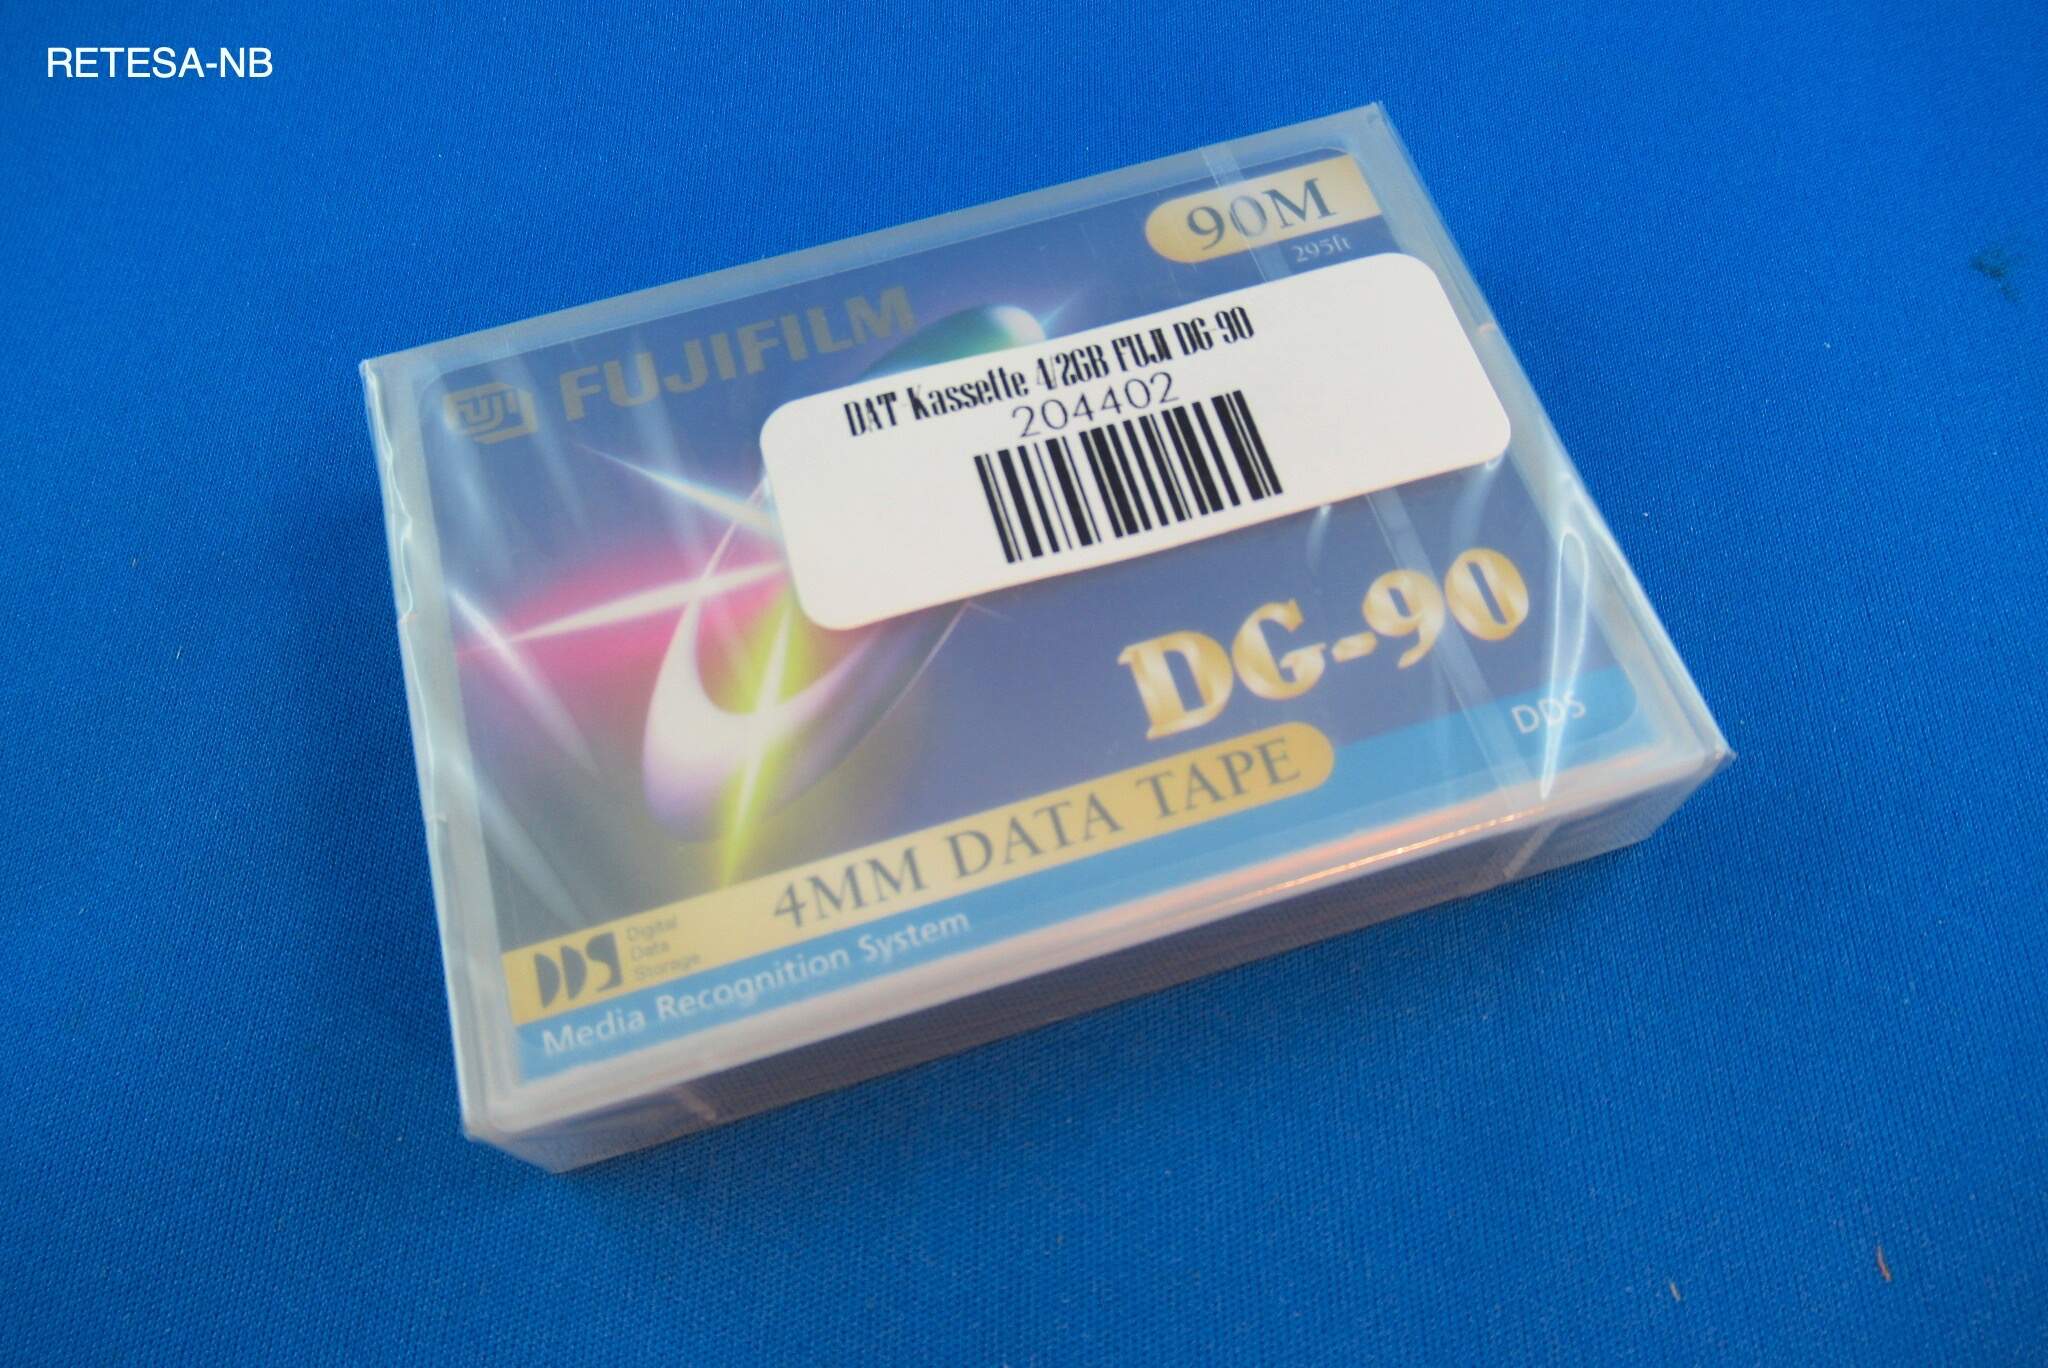 DAT-Kassette 4/2GB FUJI DG-90 FUJI 40651